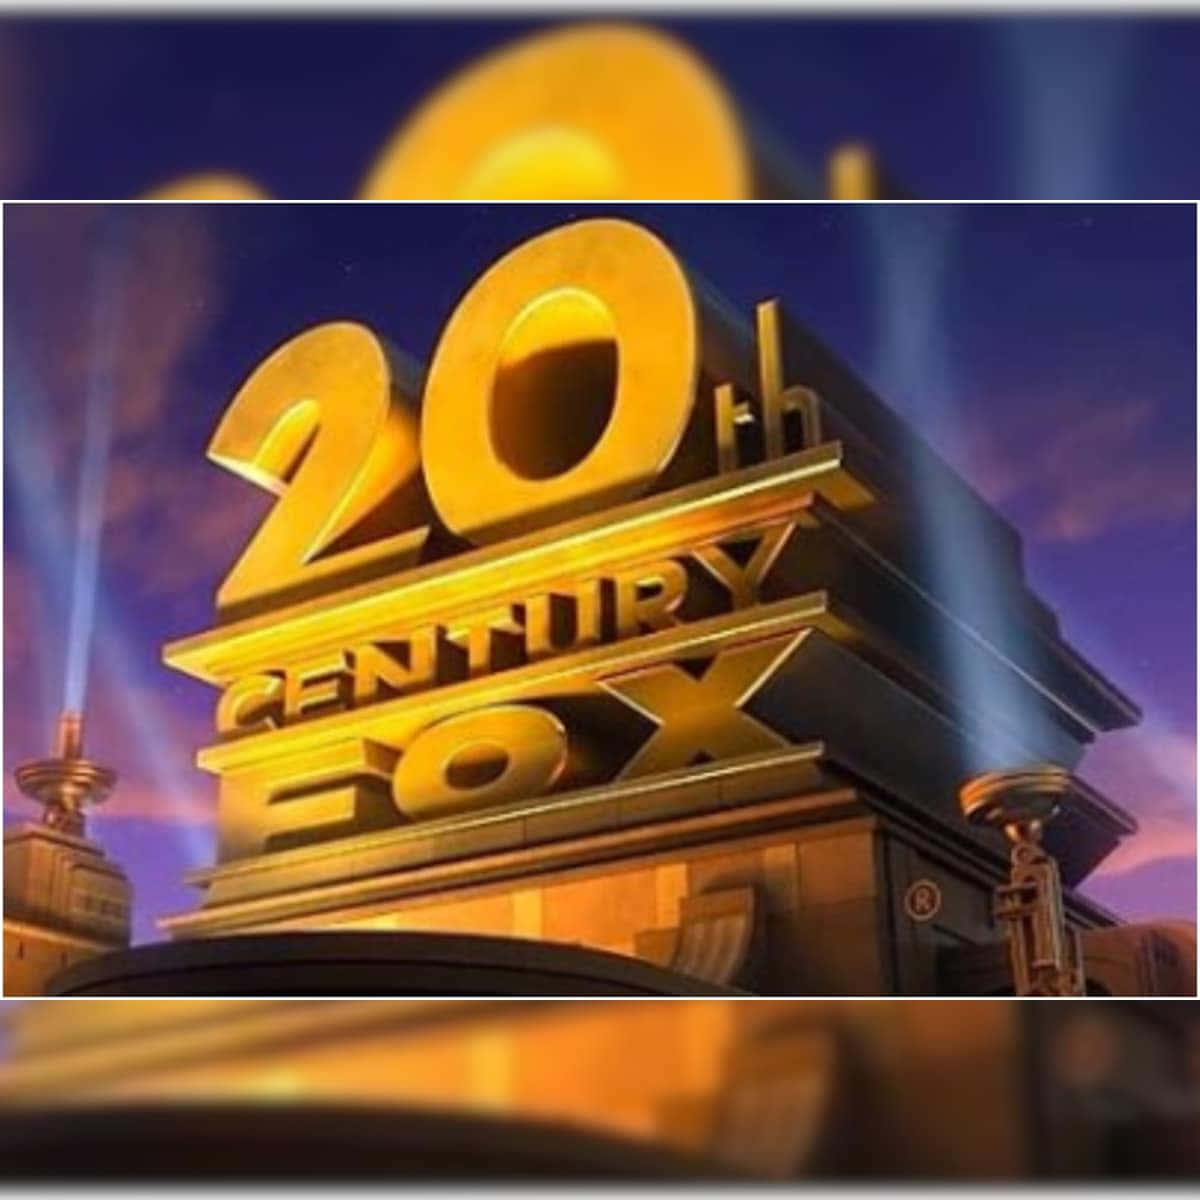 20thcentury Fox Logotyp Med Lysdioder På